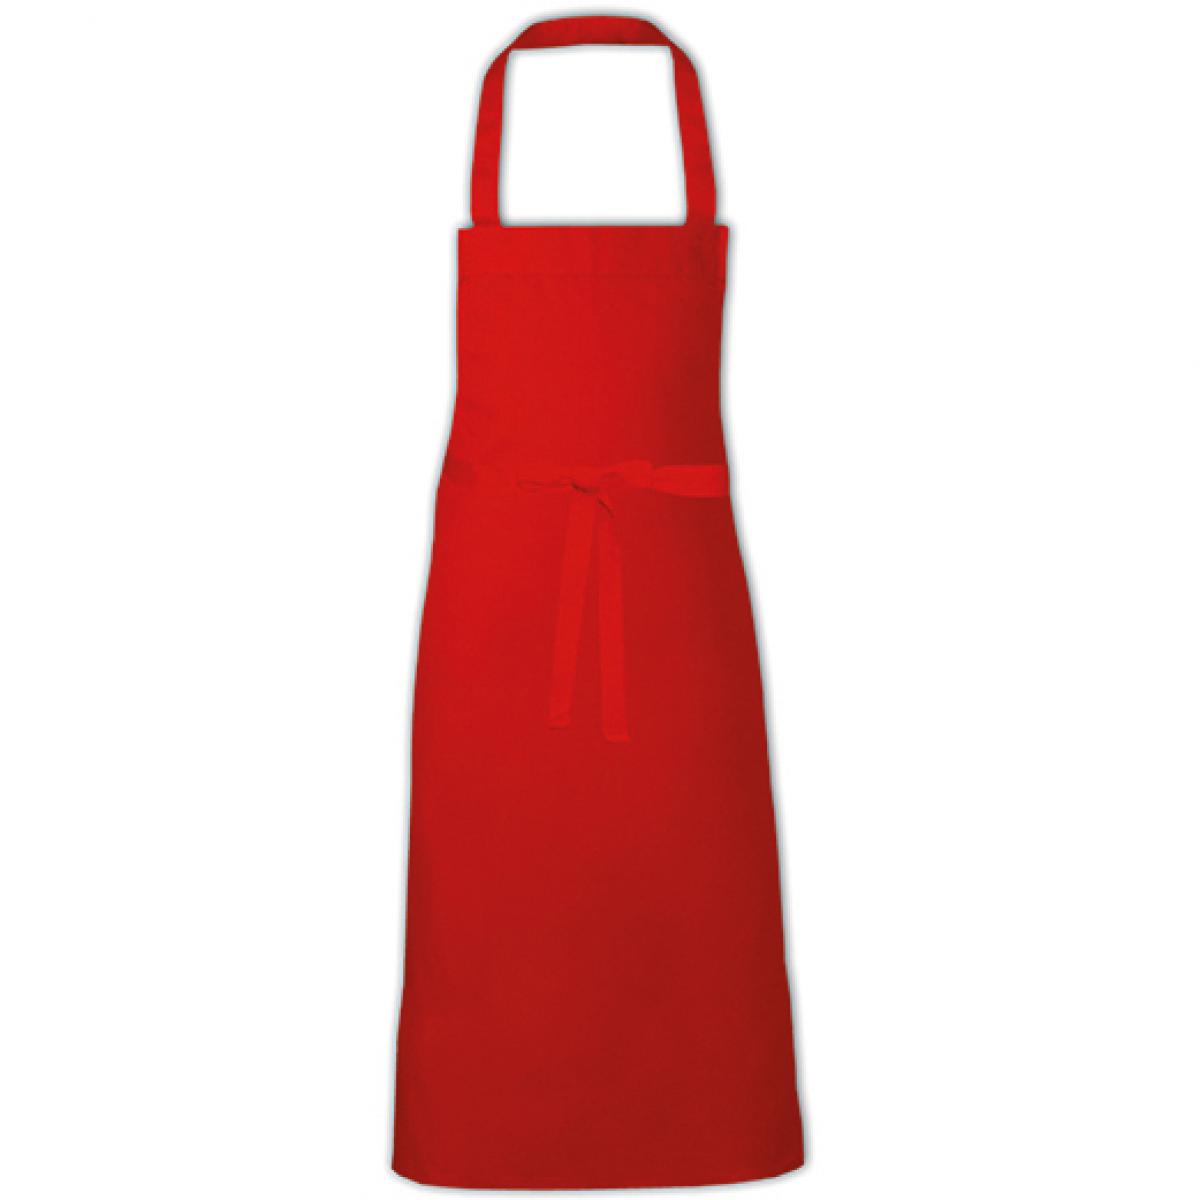 Hersteller: Link Kitchen Wear Herstellernummer: BBQ9090EU Artikelbezeichnung: Barbecue Apron XB - 90 x 90 cm - waschbar bis 60 °C Farbe: Red (ca. Pantone 200)